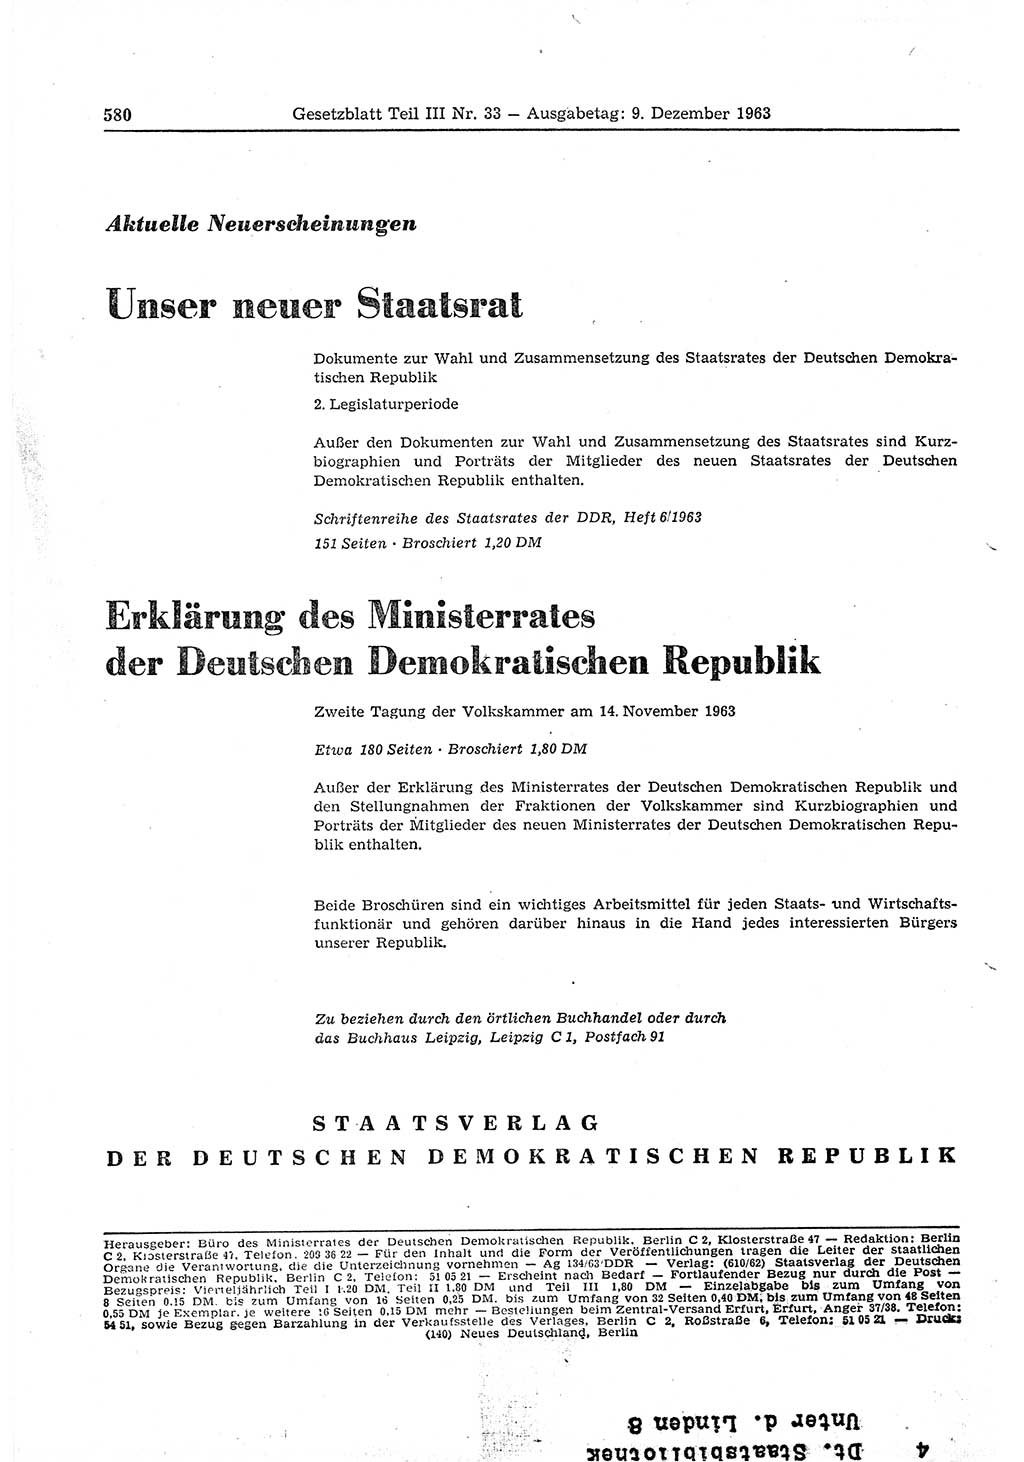 Gesetzblatt (GBl.) der Deutschen Demokratischen Republik (DDR) Teil ⅠⅠⅠ 1963, Seite 580 (GBl. DDR ⅠⅠⅠ 1963, S. 580)